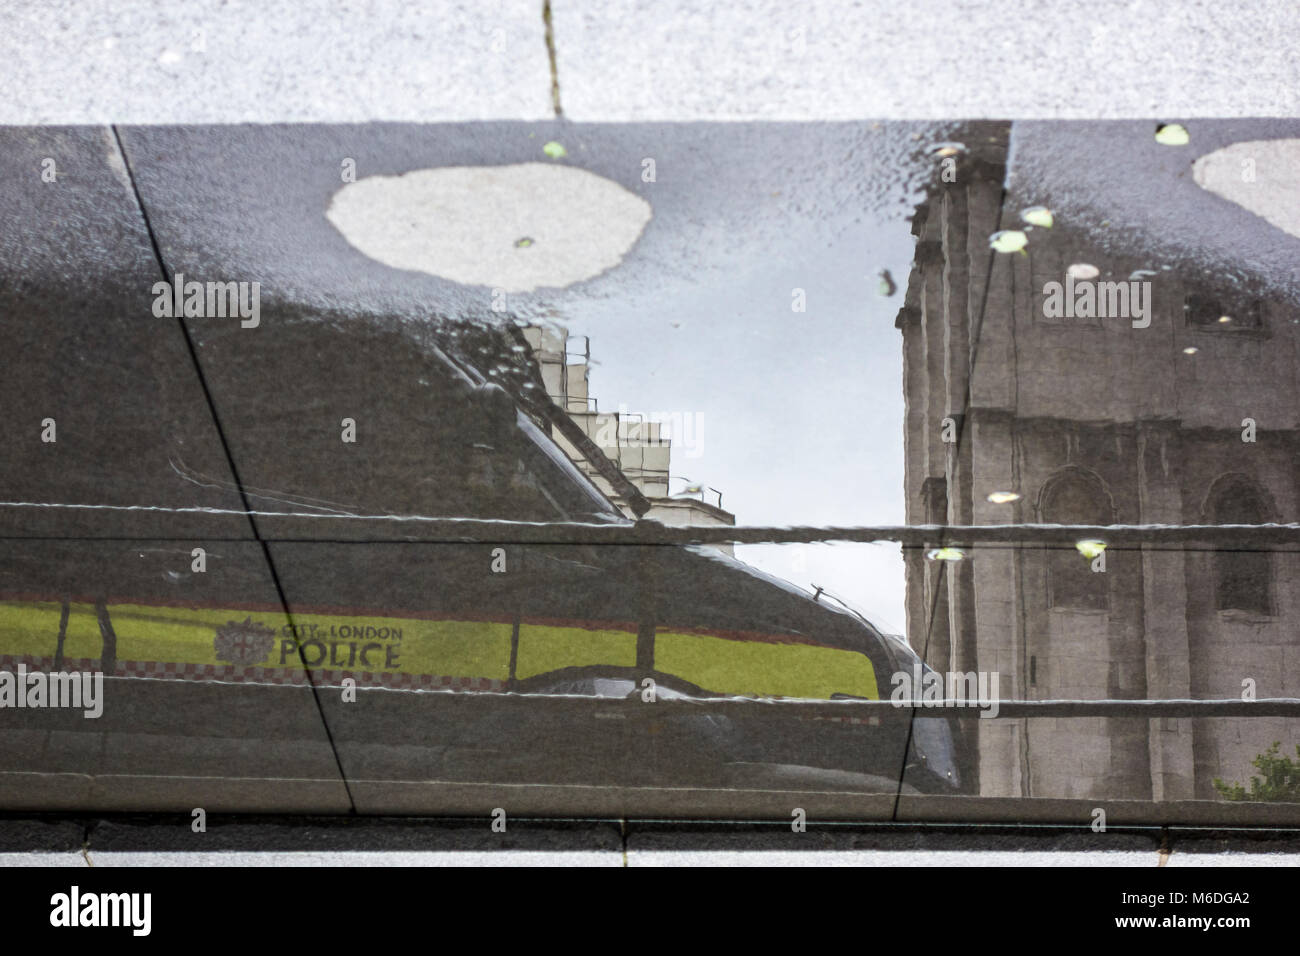 Résumé réflexions London City - Ville de London police van flaque reflet Banque D'Images